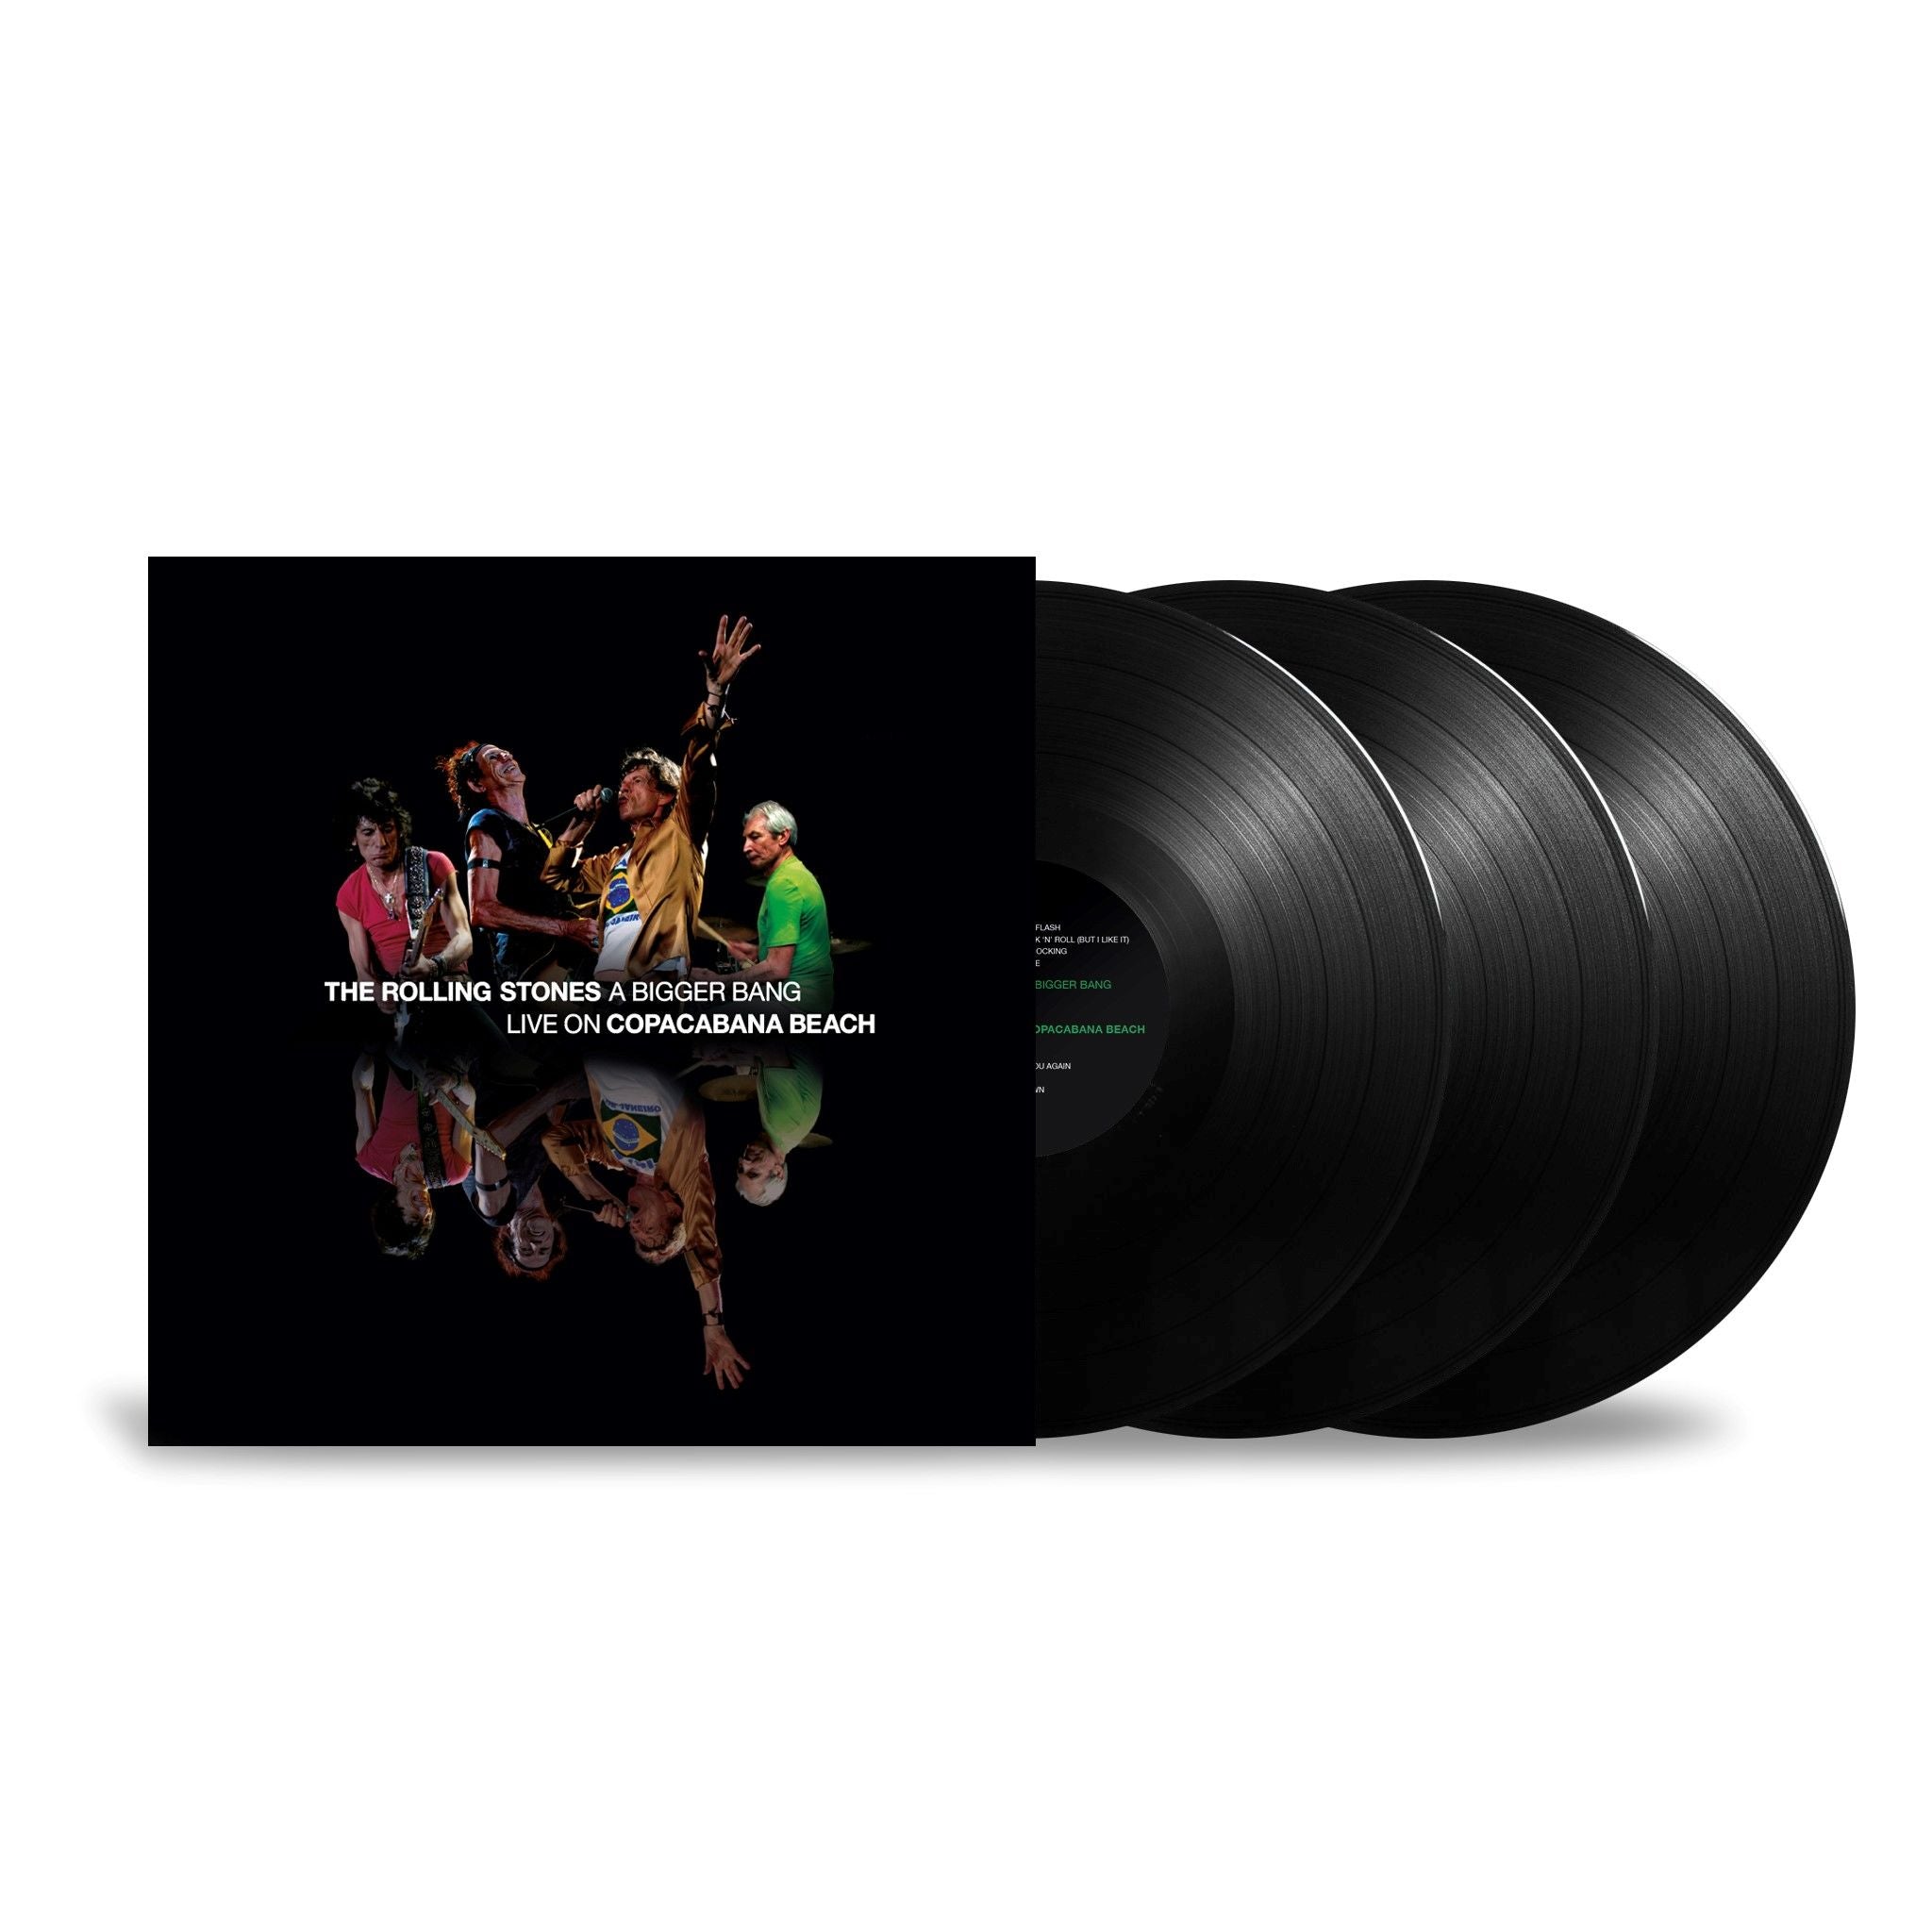 The Rolling Stones - ‘A Bigger Bang’ Live On Copacabana Beach: Black Vinyl 3LP